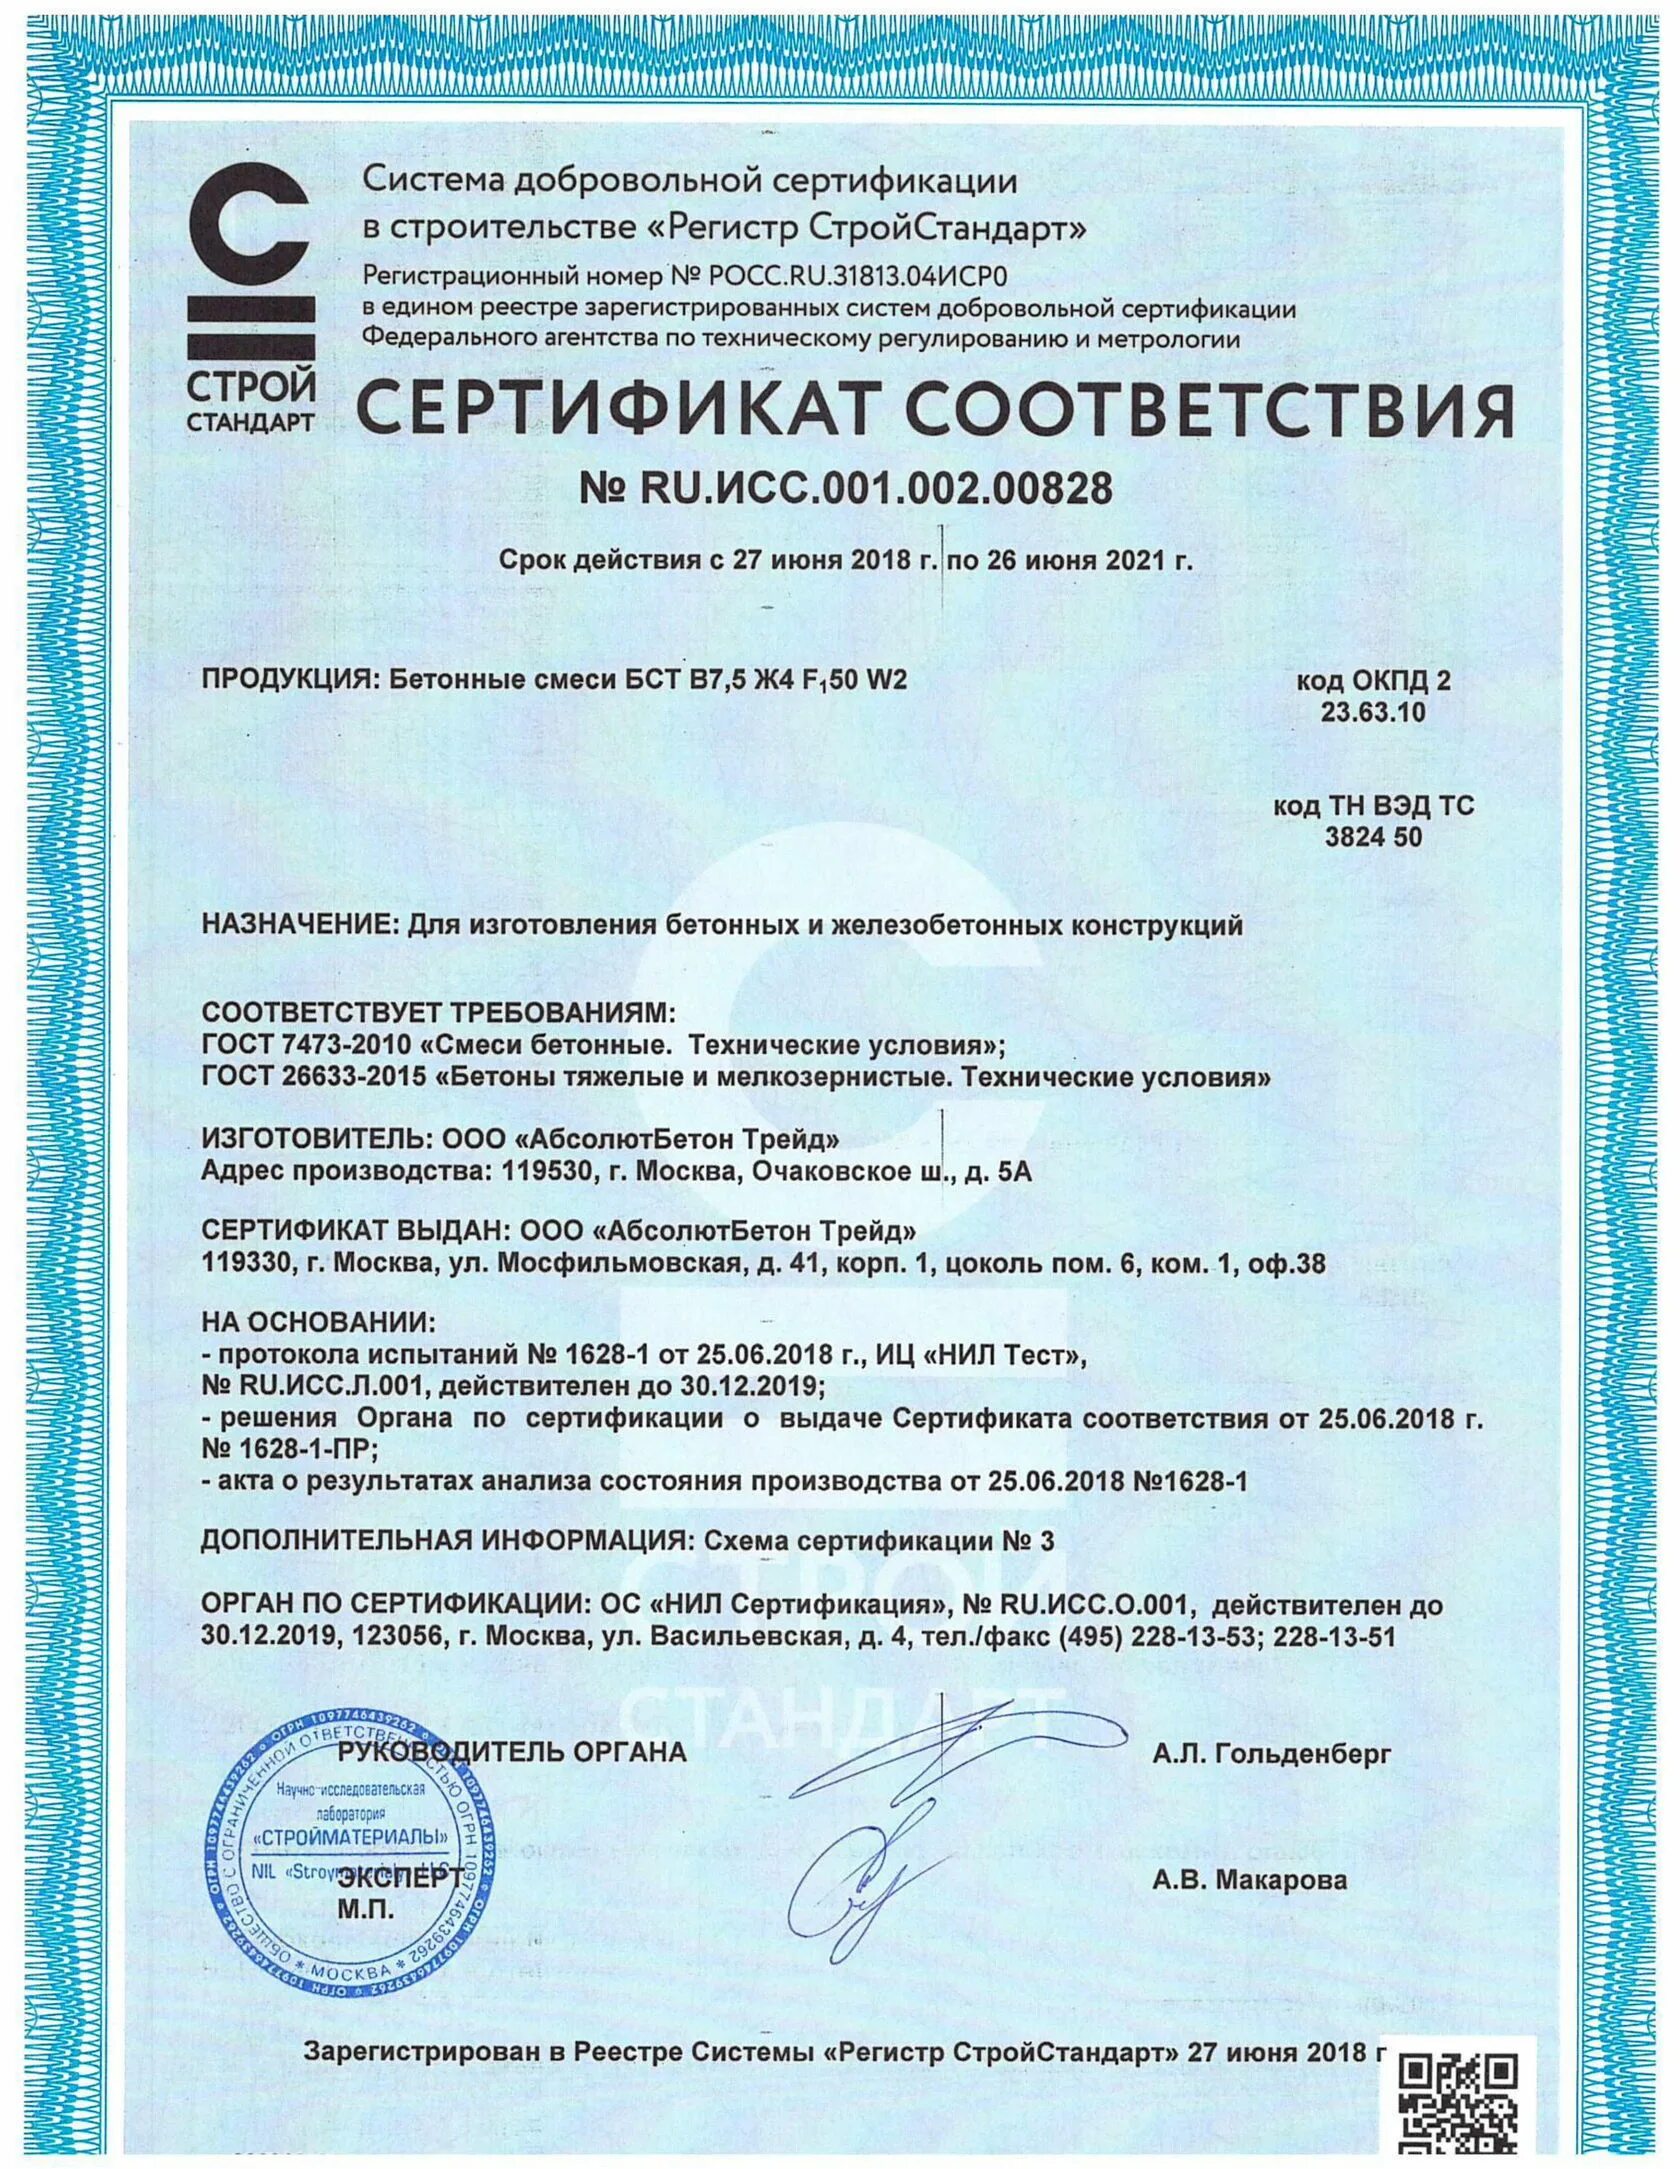 Сертификация в строительстве. Бетон тяжелый класс в15 м200 сертификат соответствия. Бетон тяжелый м200 сертификат соответствия. Сертификат на бетон марки м200.